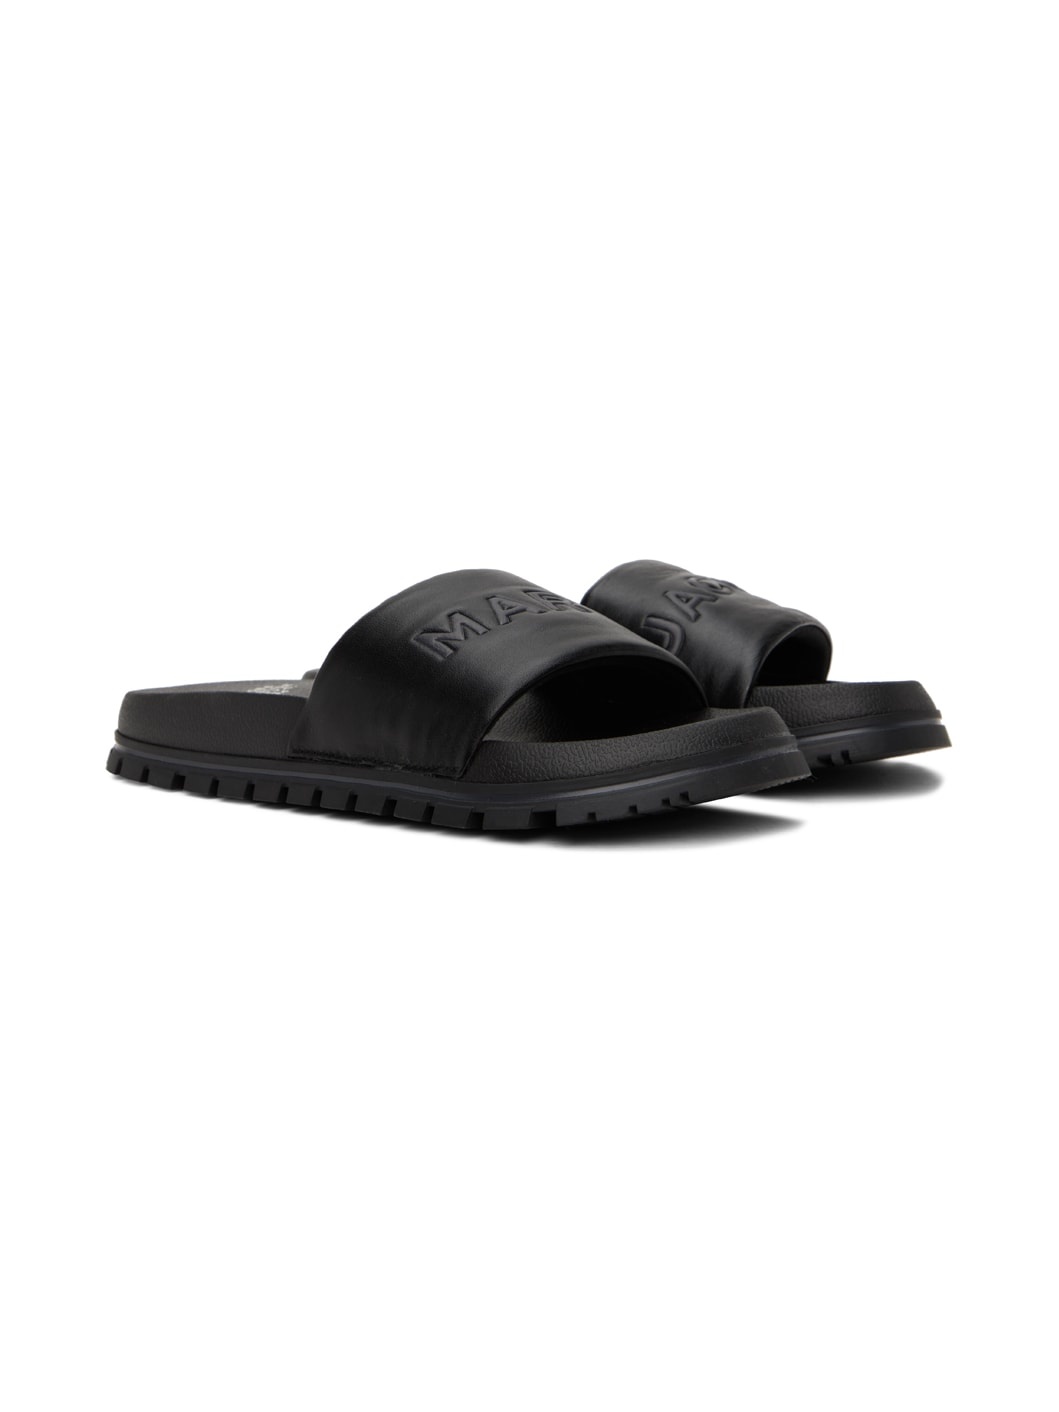 Black 'The Leather Slide' Sandals - 4